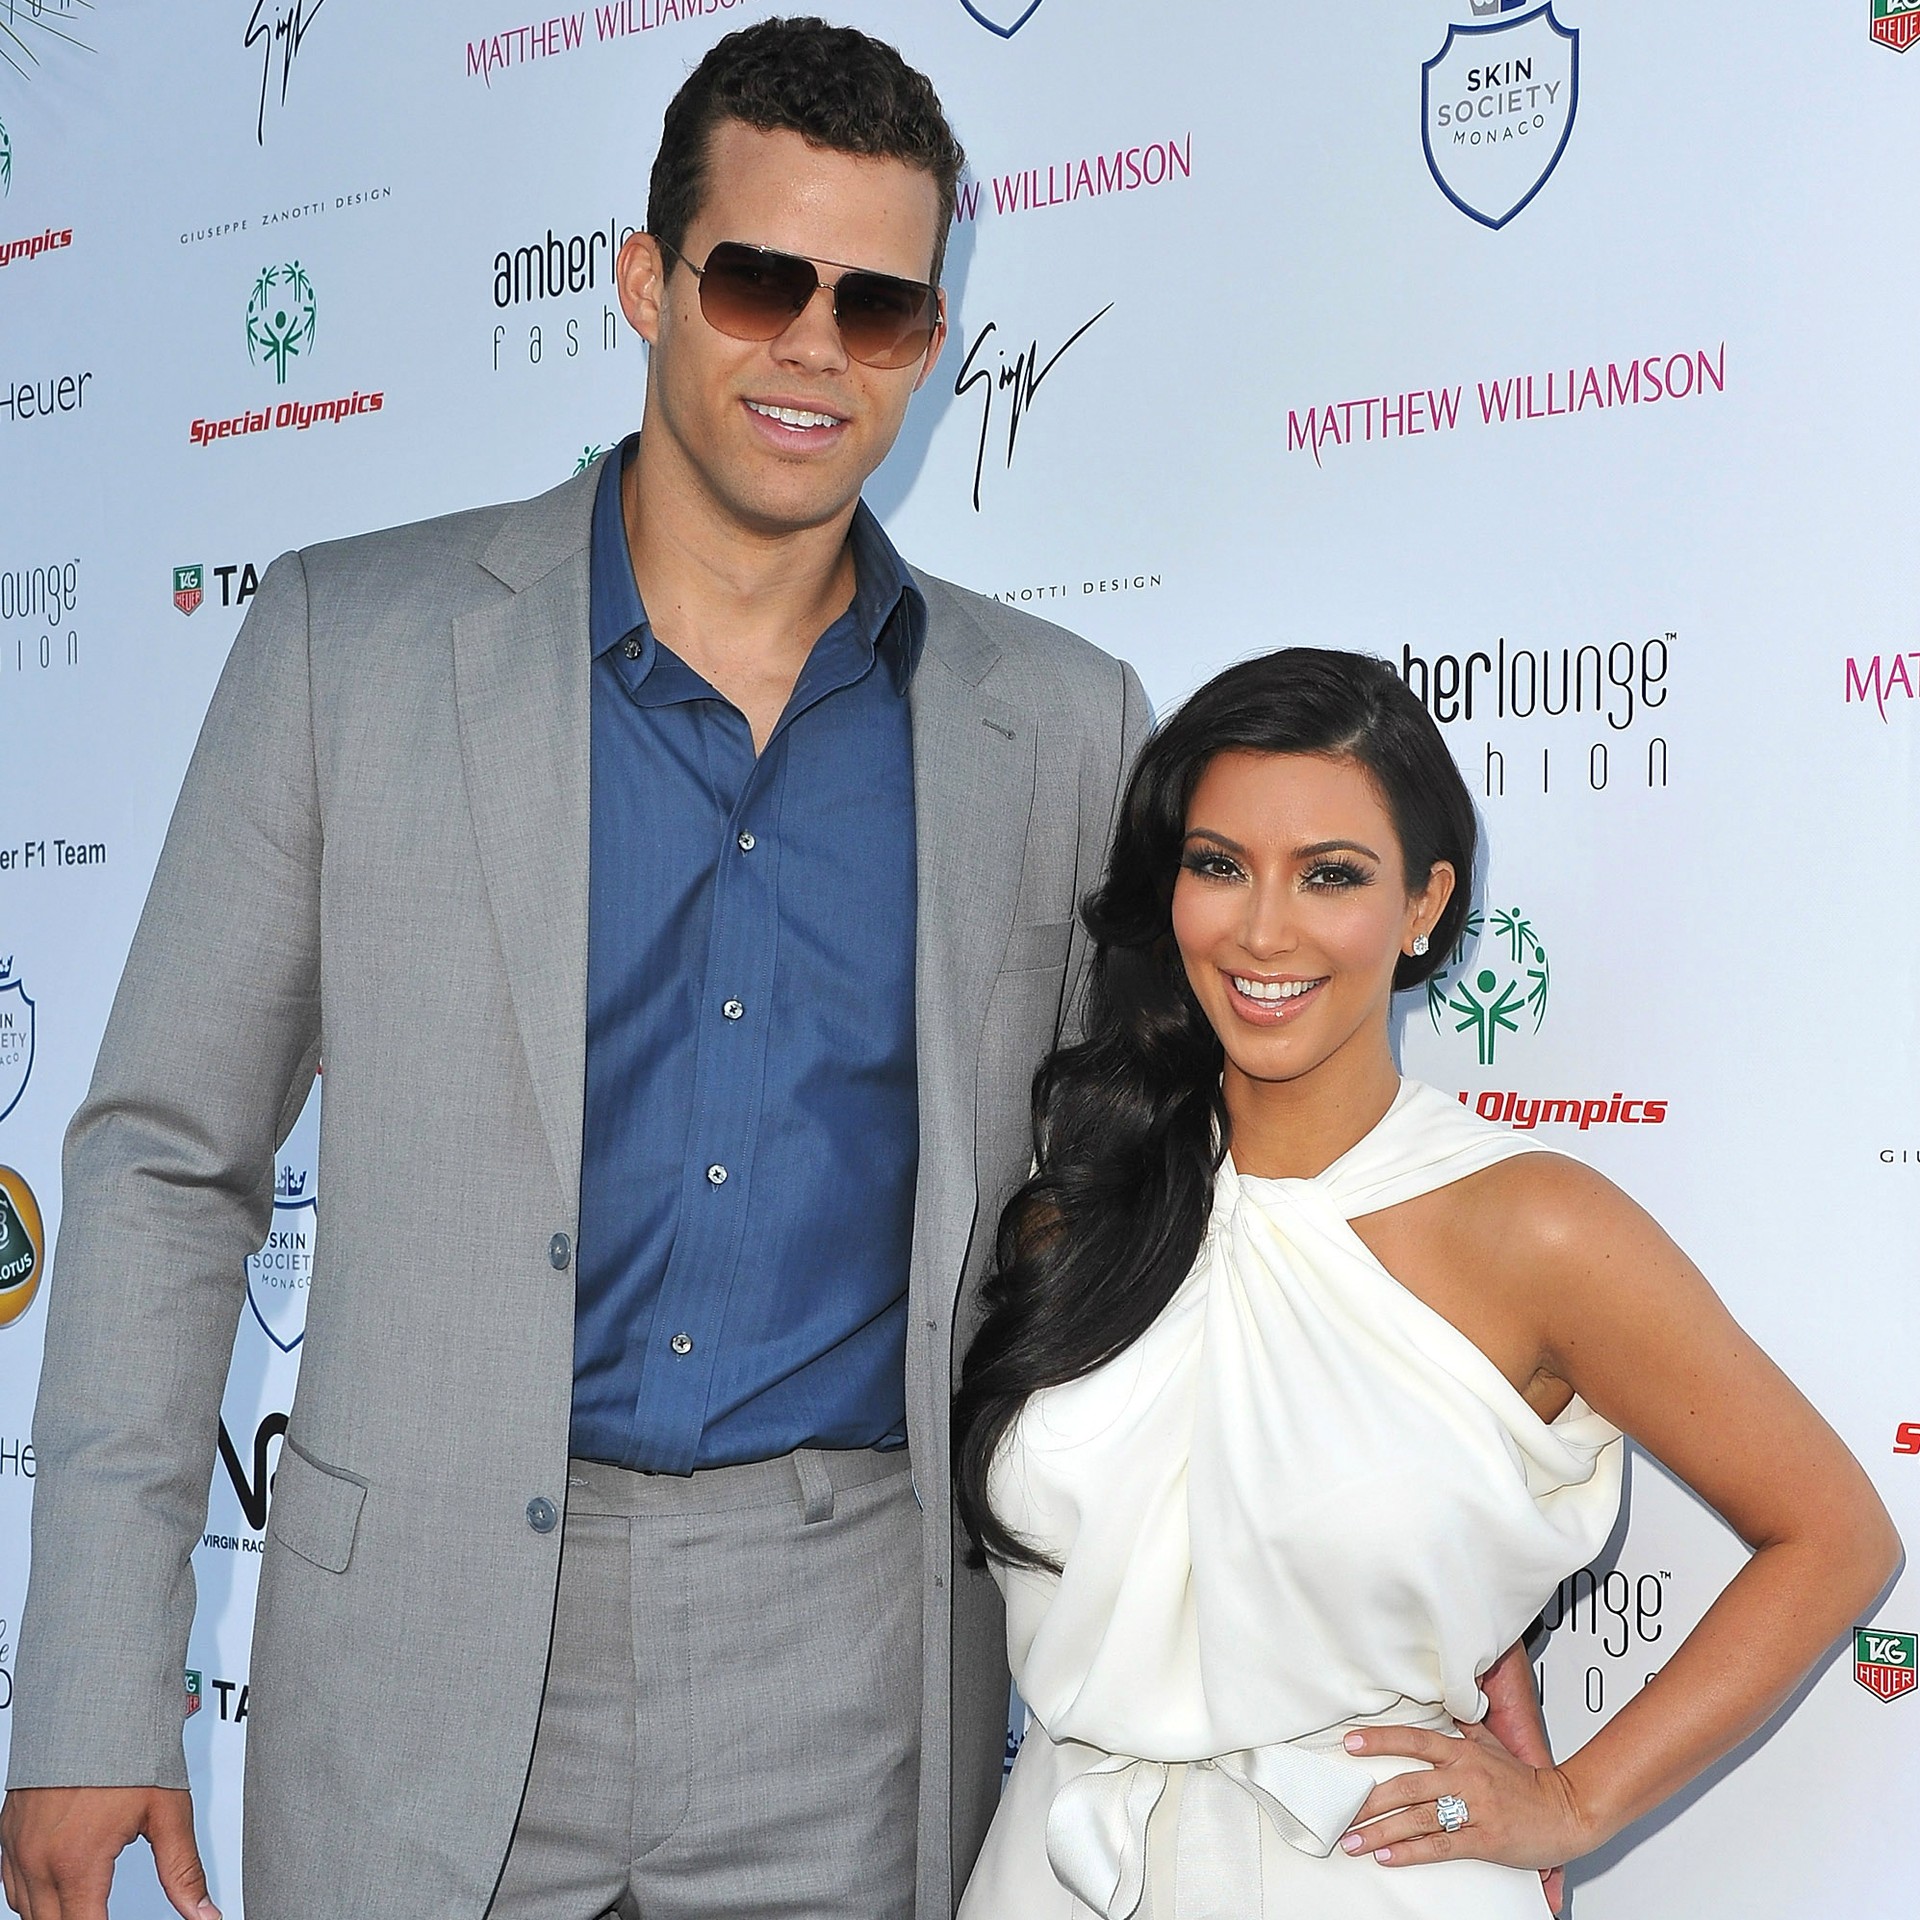 O casamento da socialite Kim Kardashian, de 33 anos, com o jogador de basquete Kris Humphries, de 29, em outubro de 2011 parece ter sido só um espetáculo para a TV. Duas semanas depois de a cerimônia ir ao ar, ela pediu divórcio. (Foto: Getty Images)